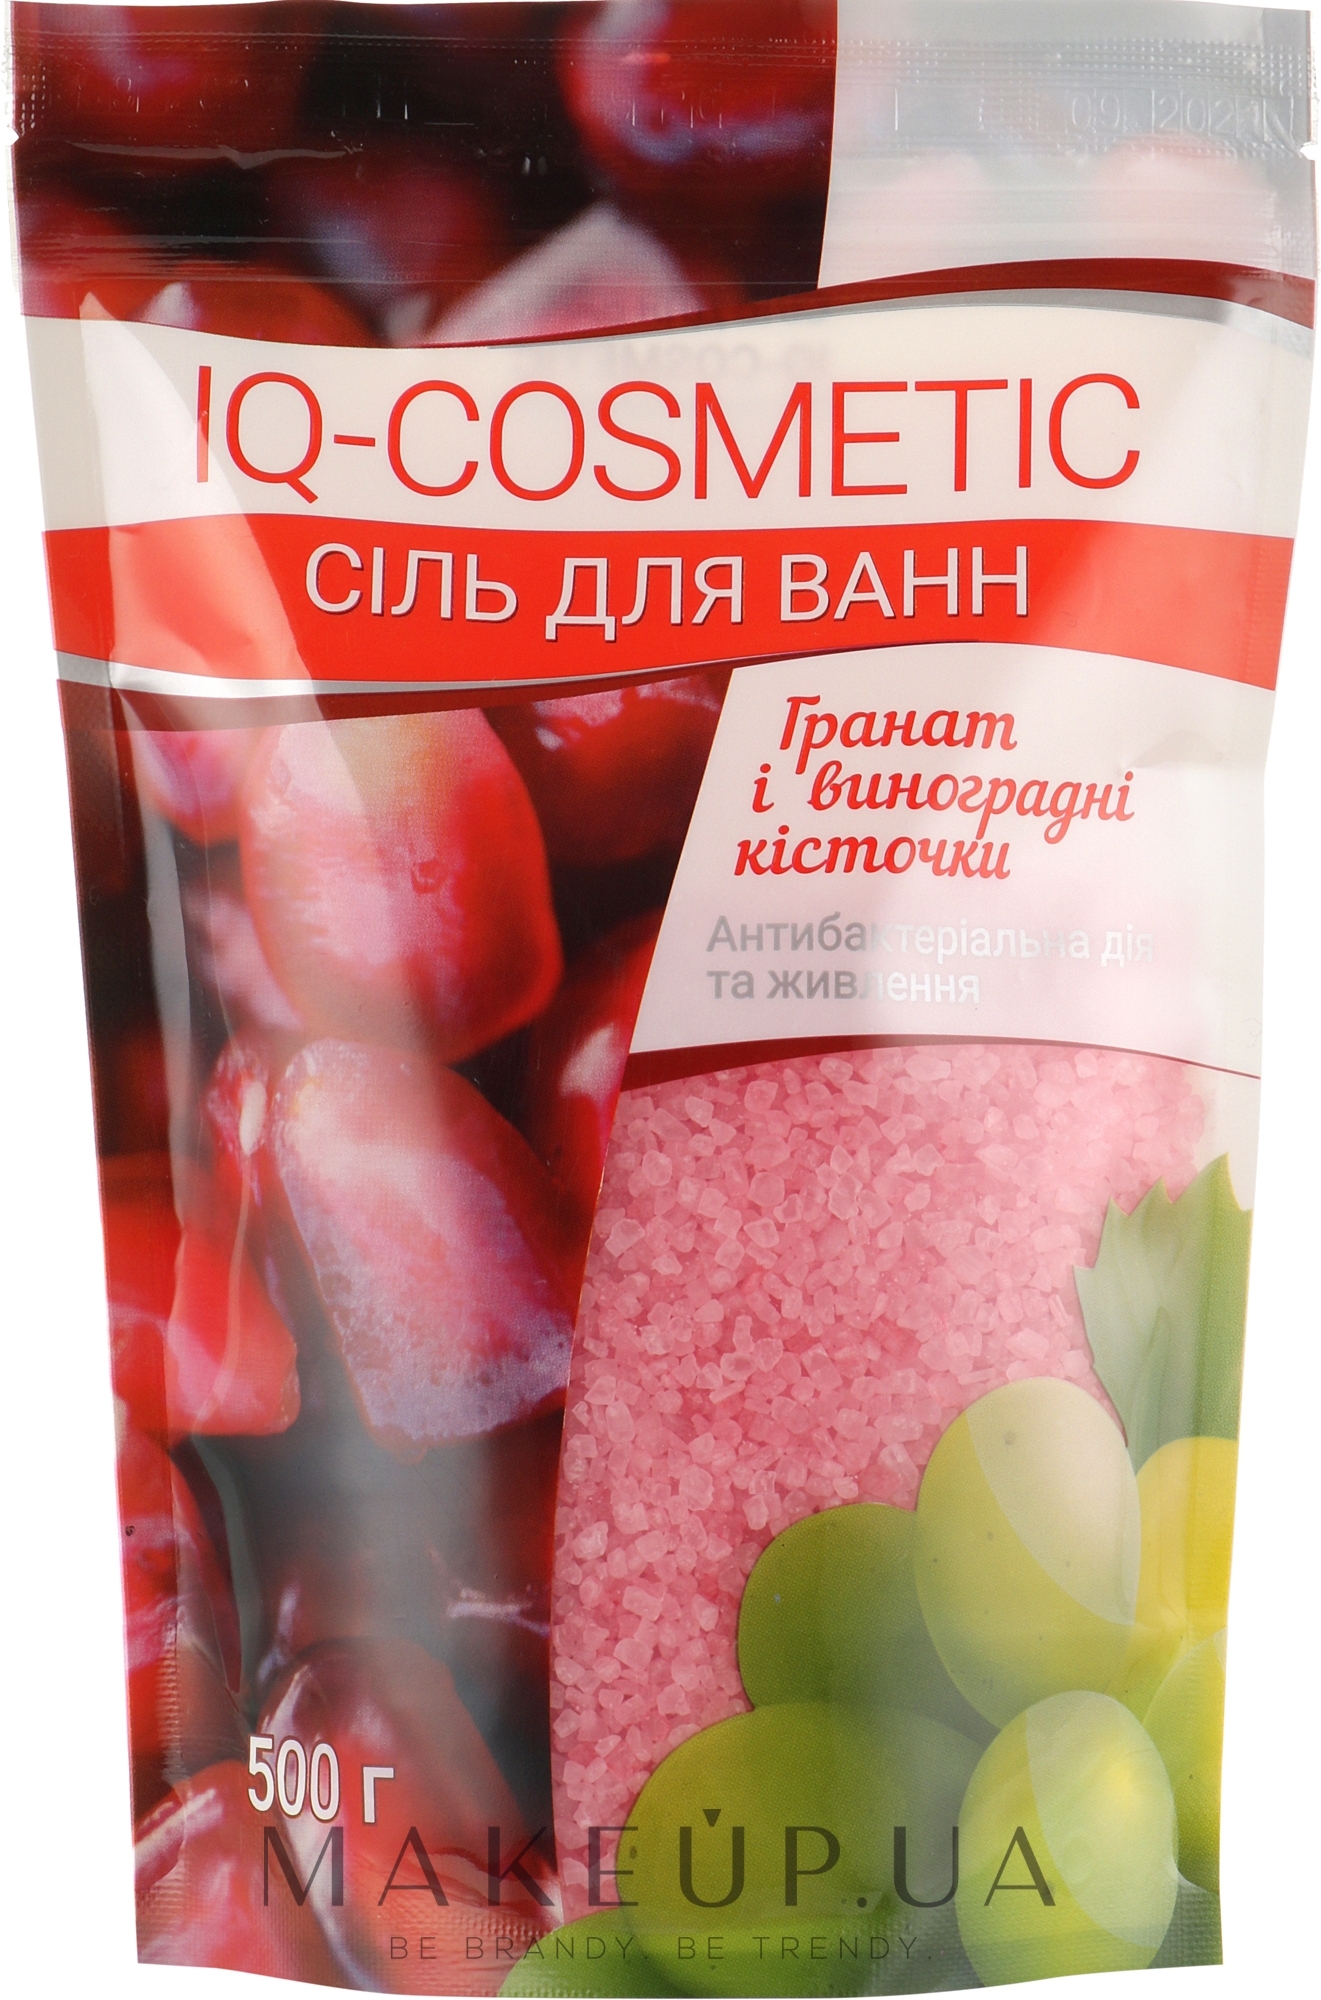 Сіль для ванни "Гранат і виноградні кісточки"  - IQ-Cosmetic — фото 500g